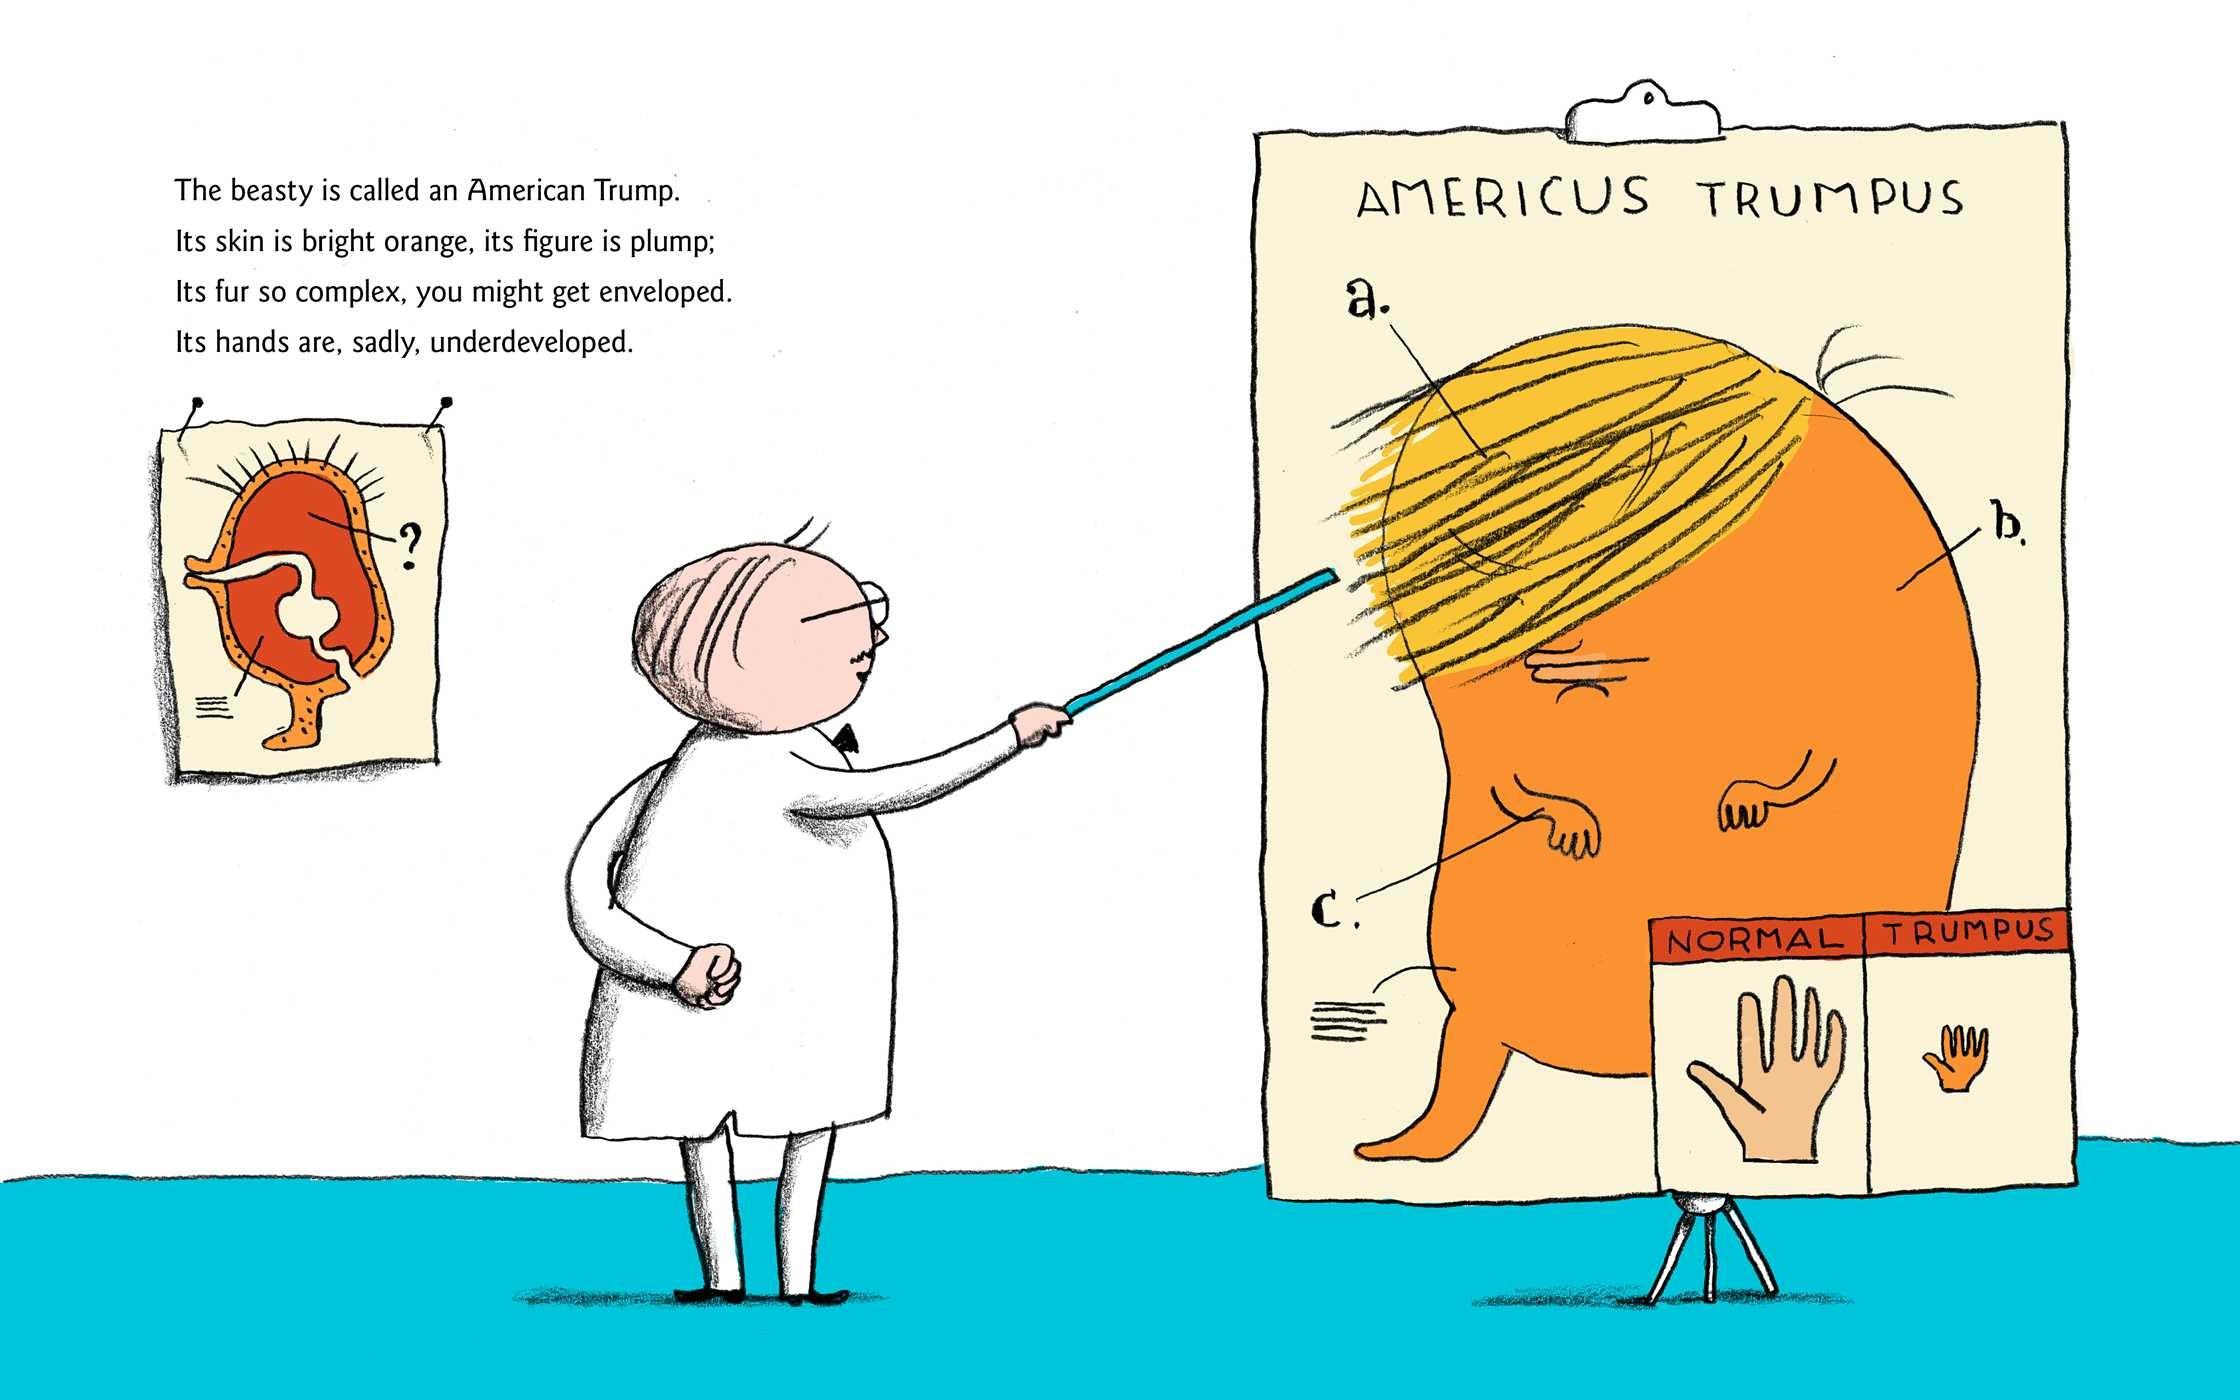 Le livre présente Donald Trump comme une boule orange à la chevelure abondante. [Simon & Schuster]